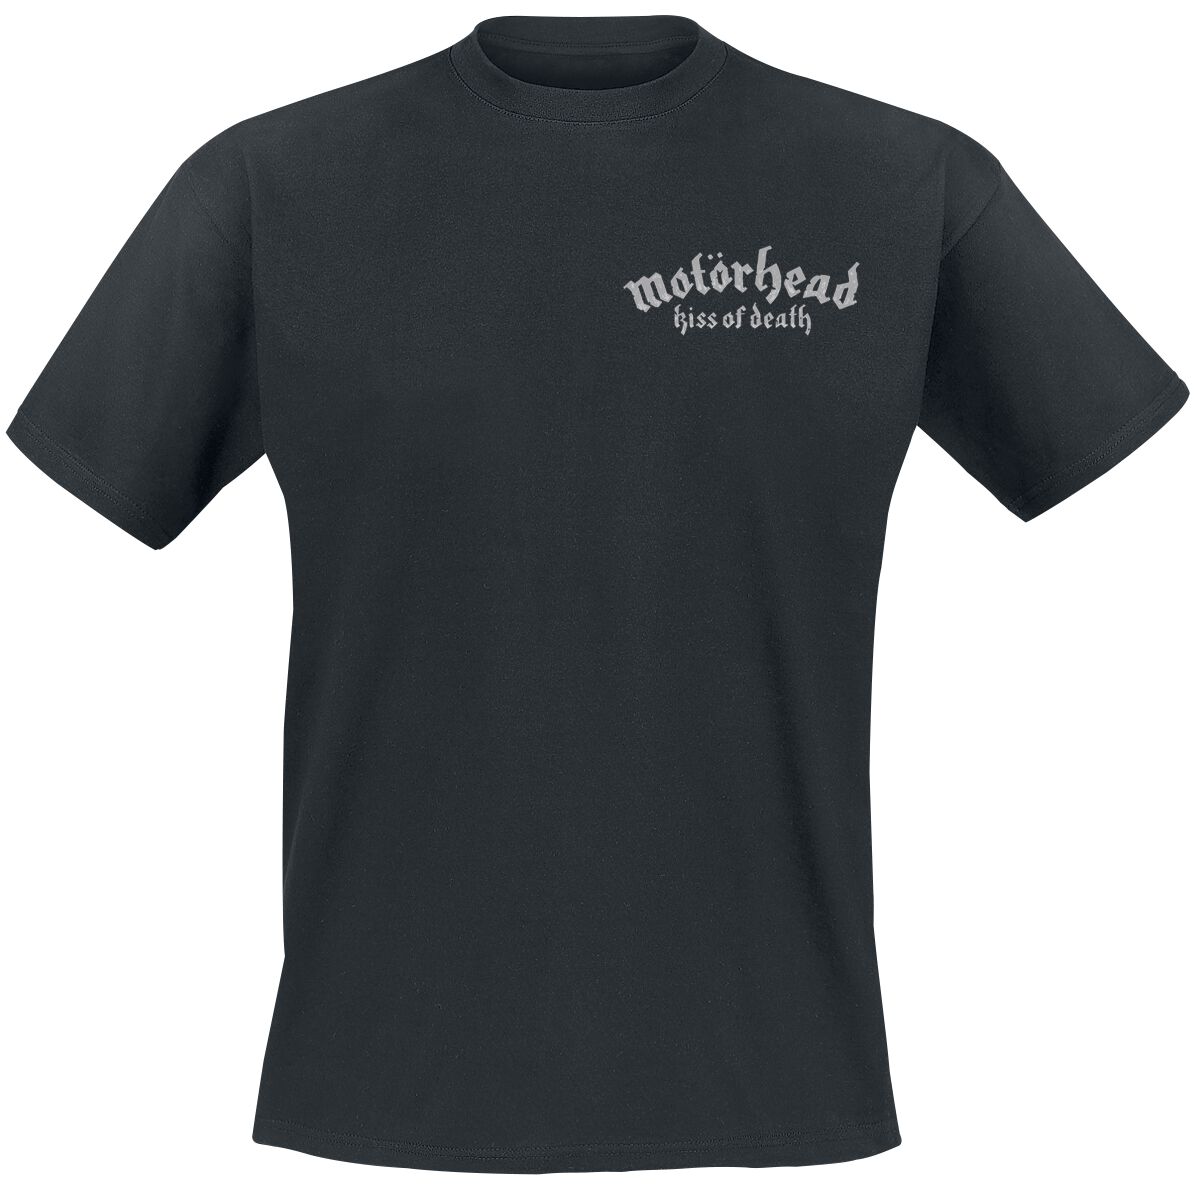 Motörhead T-Shirt - Kiss Of Death Bullet Circle V2 - S bis 4XL - für Männer - Größe XL - schwarz  - Lizenziertes Merchandise!